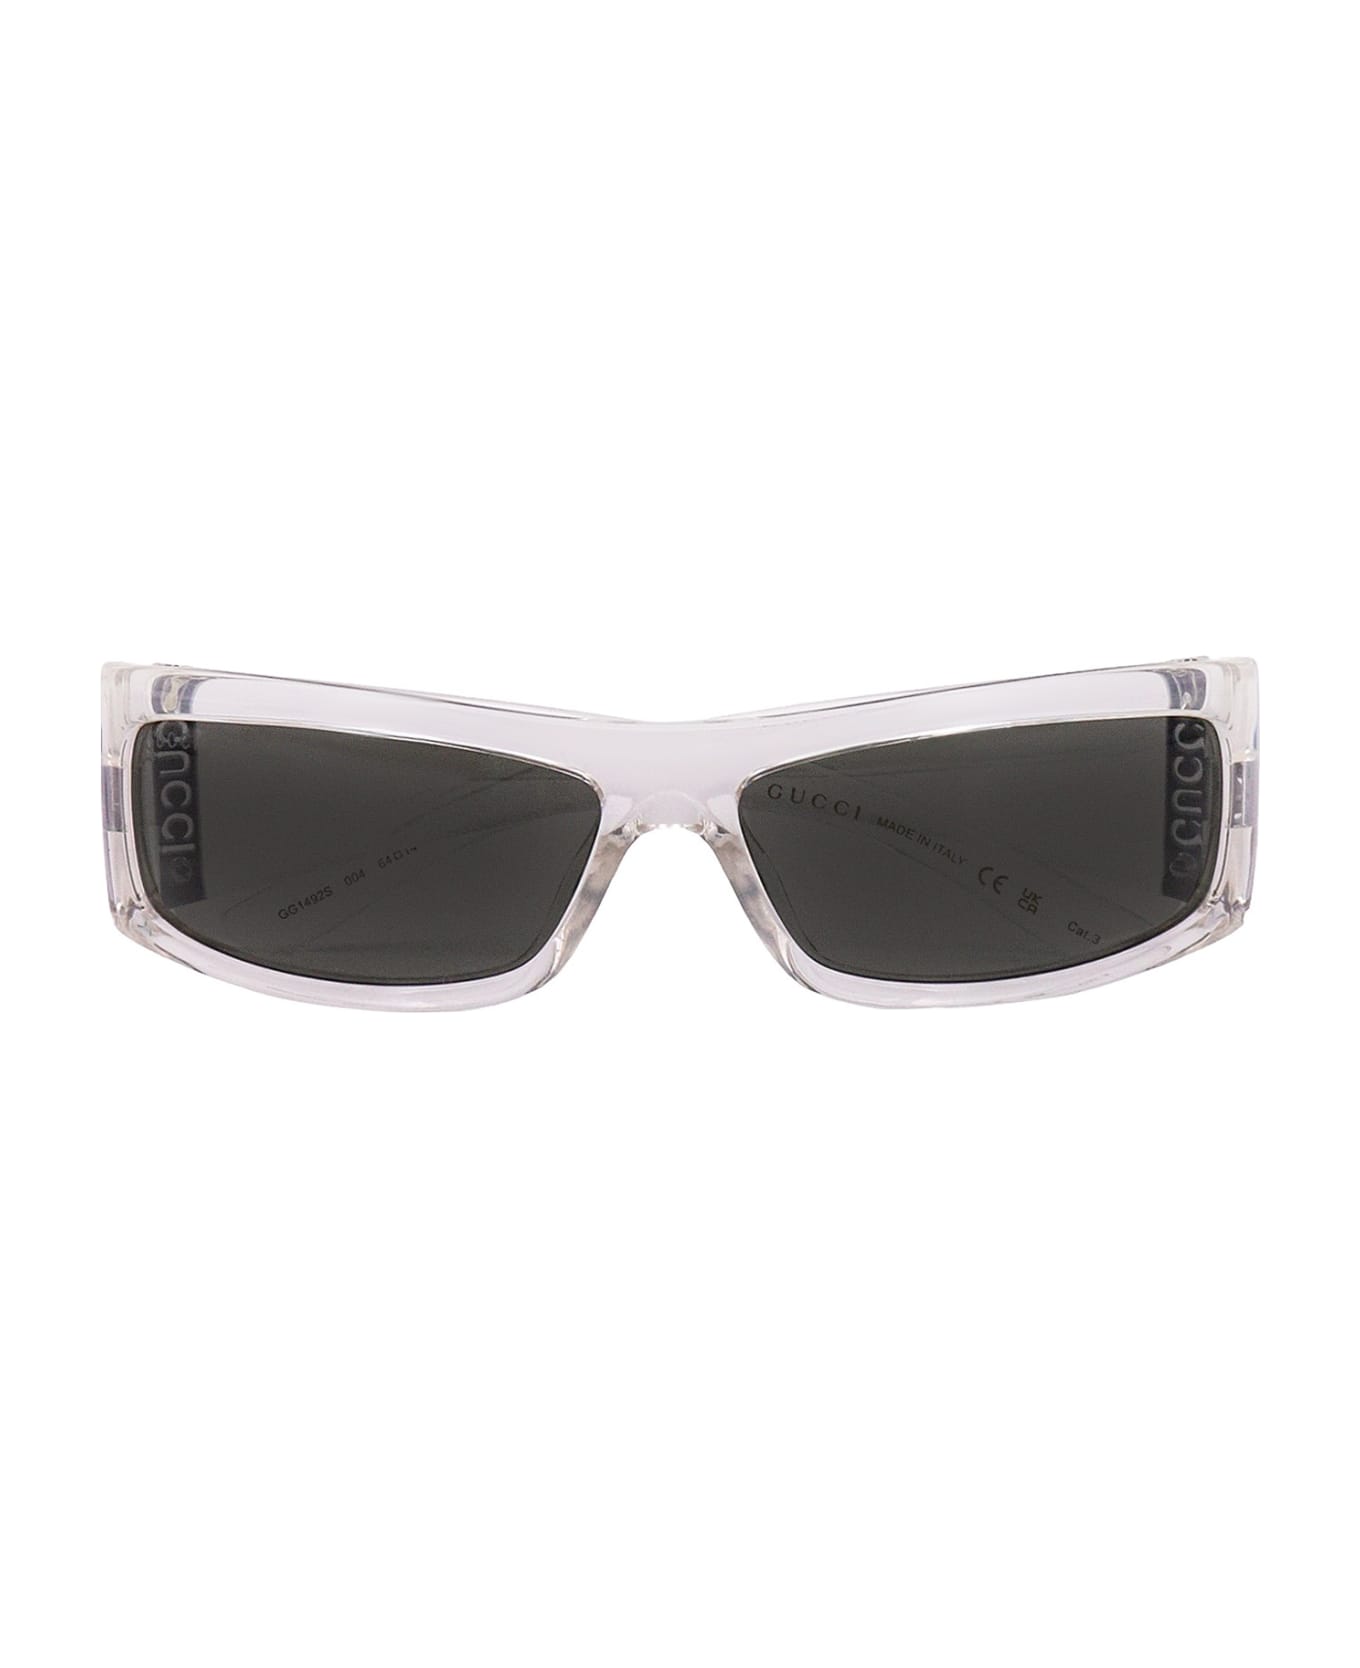 Gucci Eyewear Sunglasses - Grey